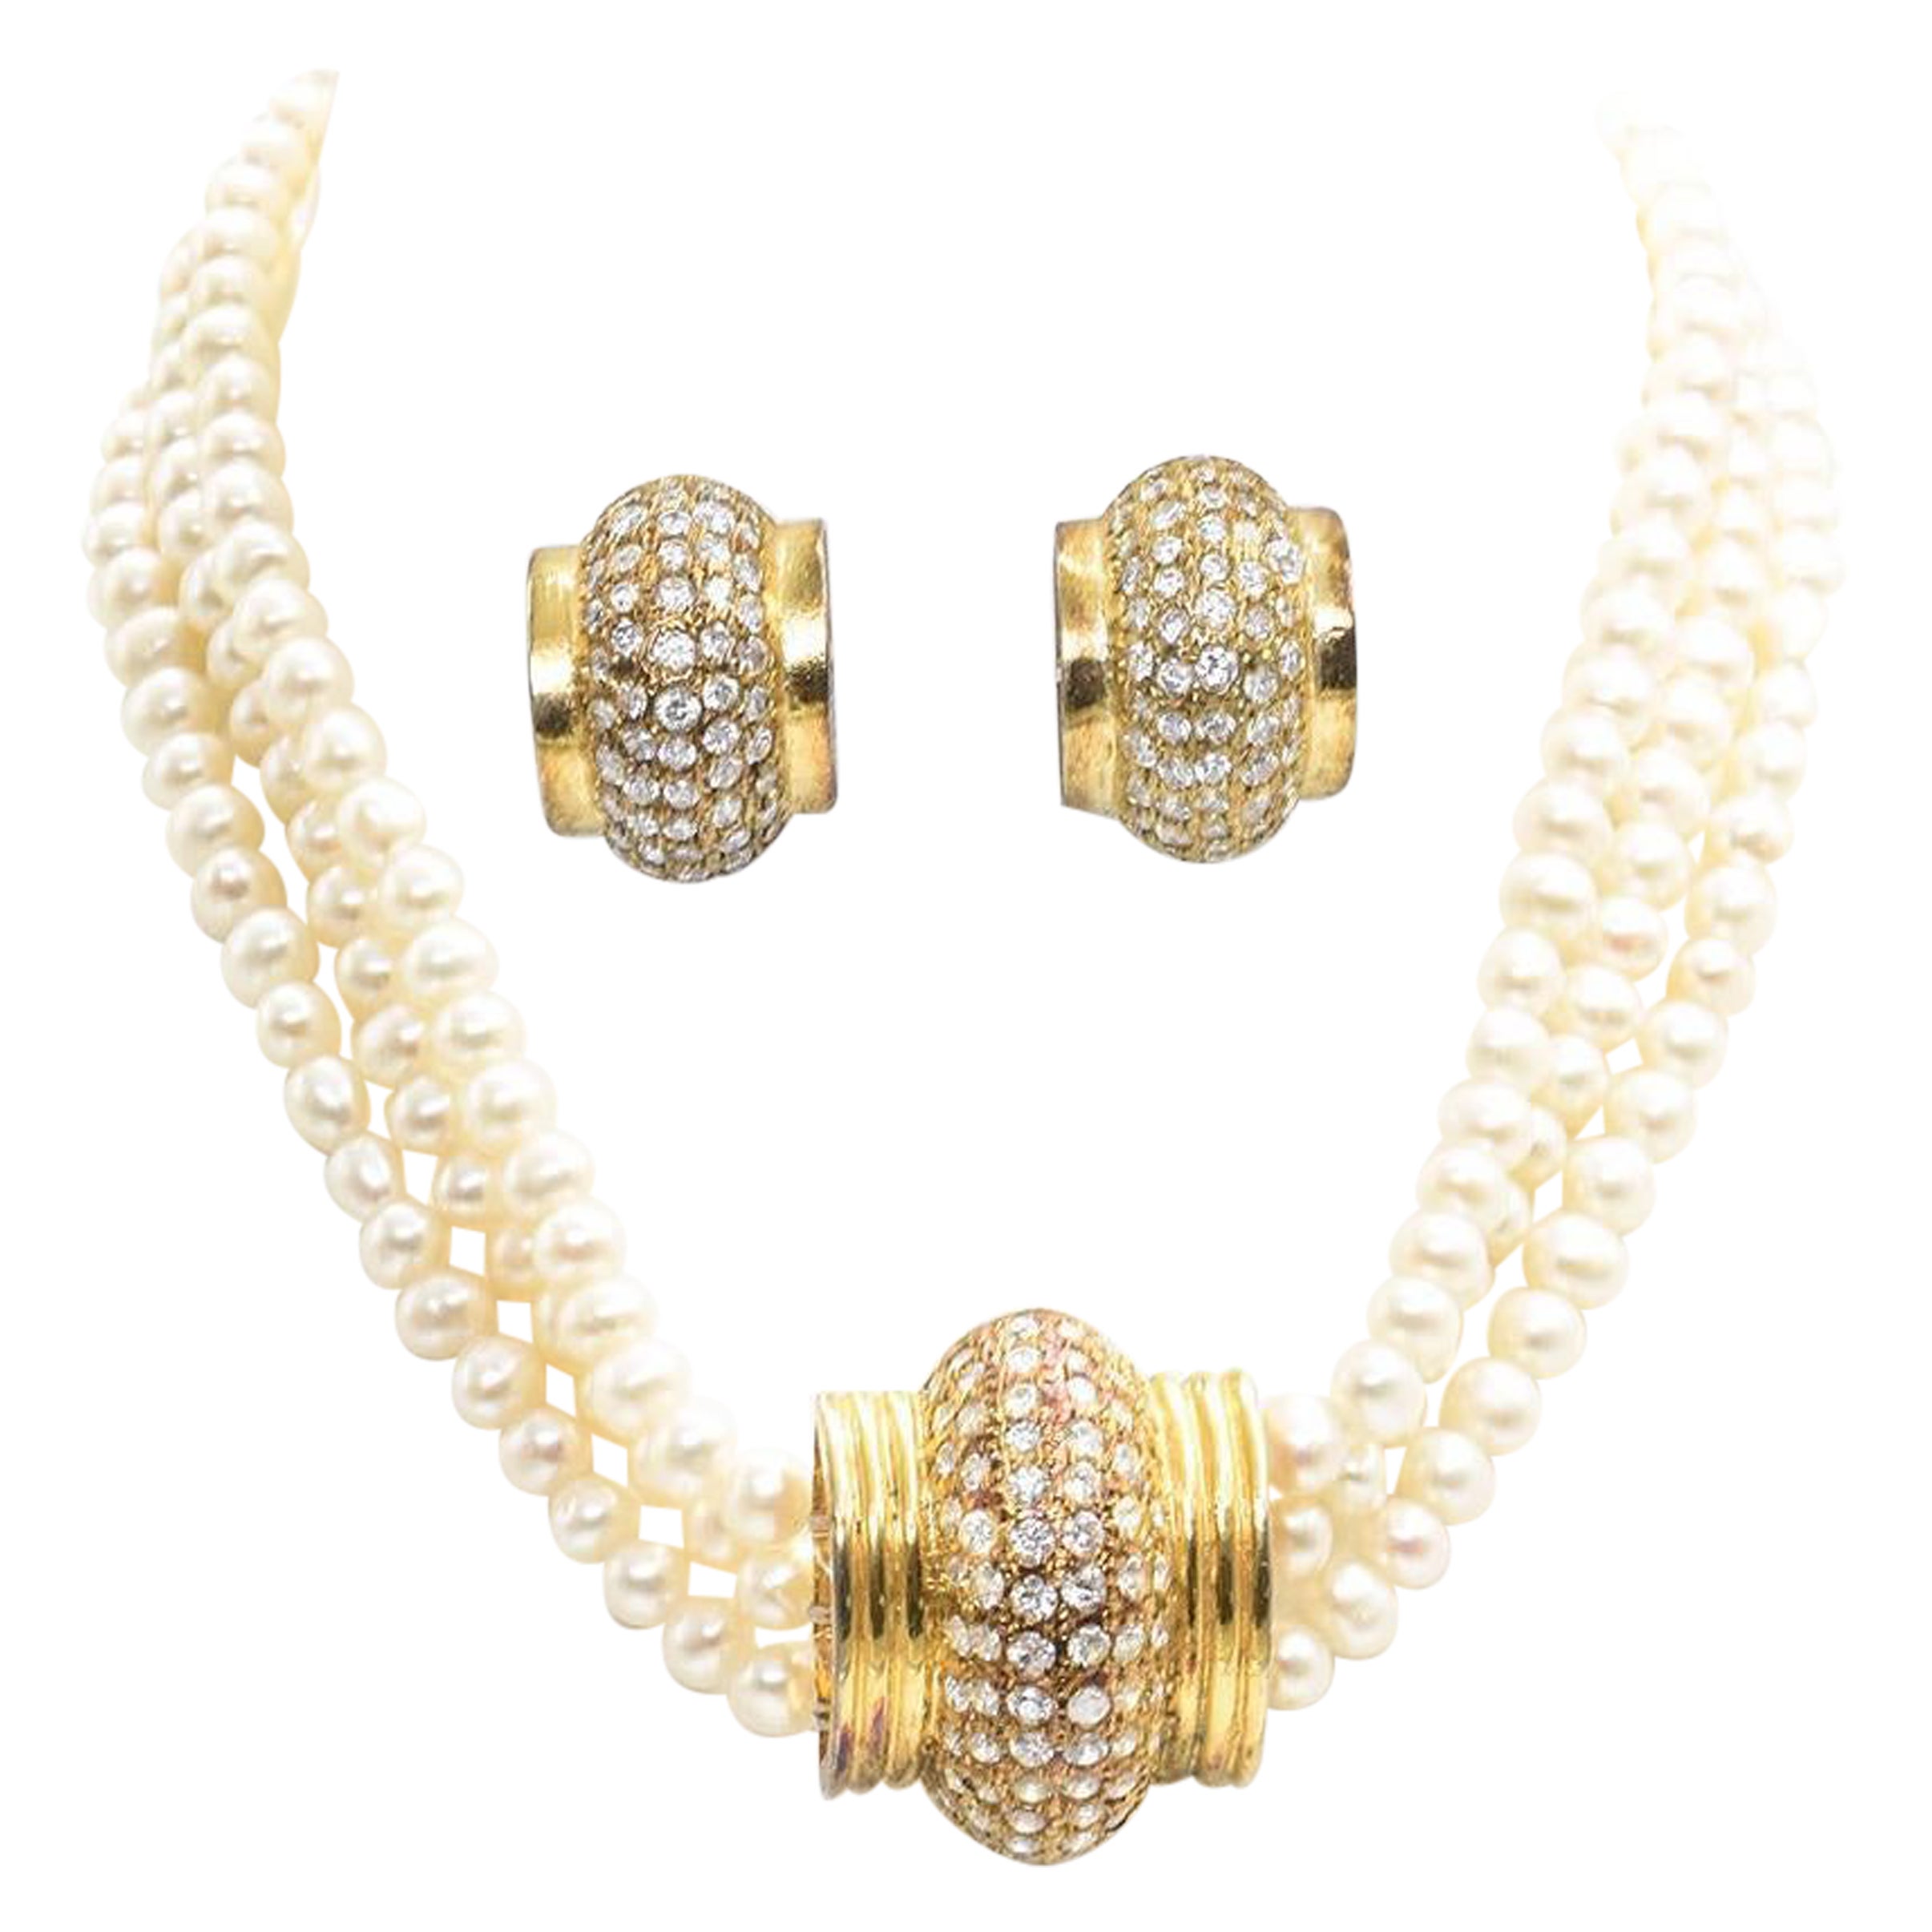 Dreireihiges Set aus Halskette und Ohrringen mit Perlen, Strass und vergoldetem Gold